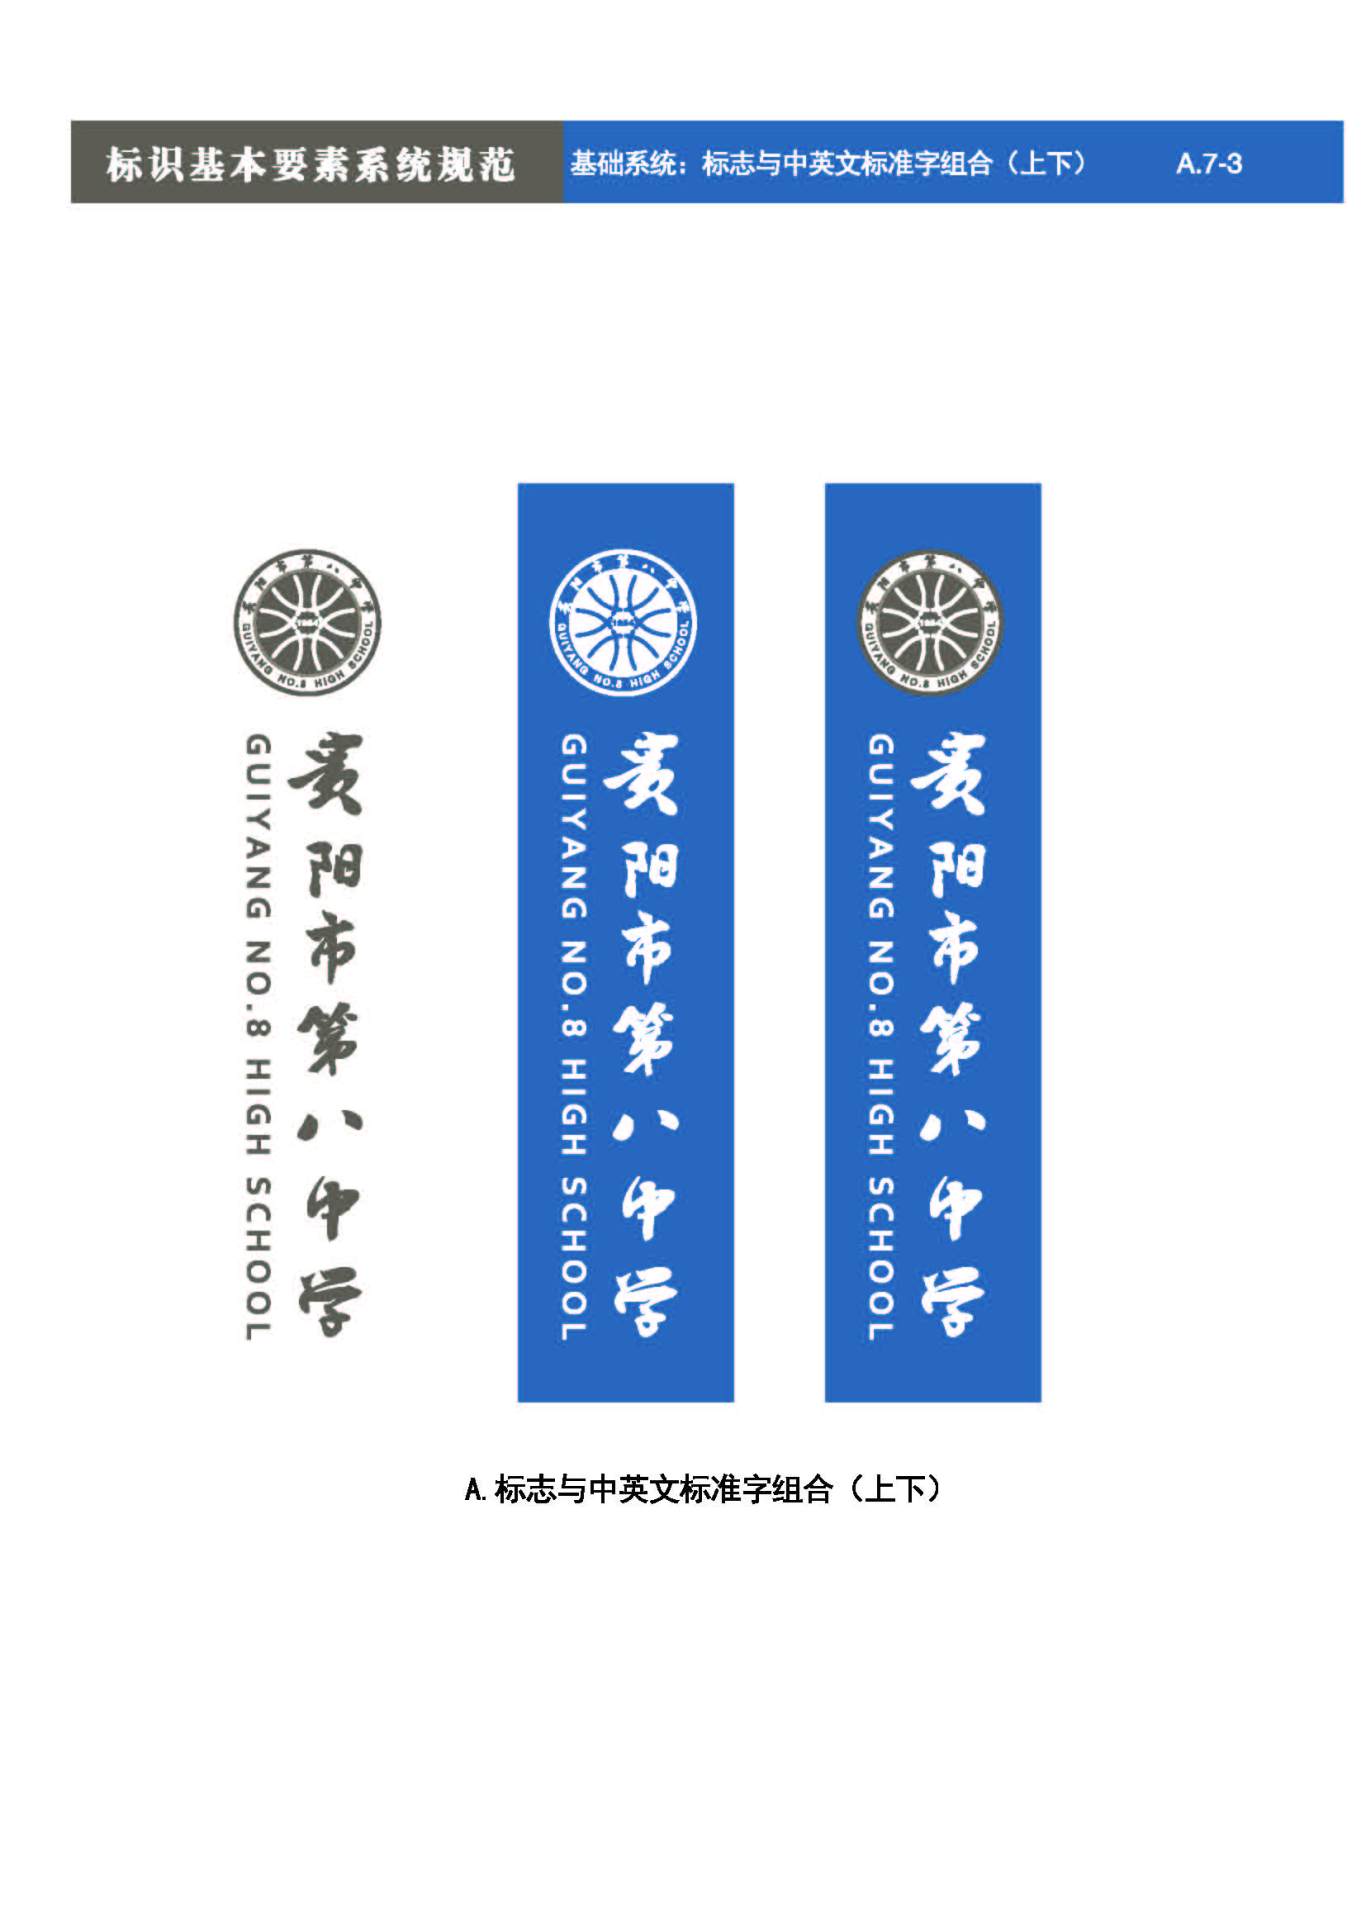 貴陽第八中學Logo、VIS設計圖24